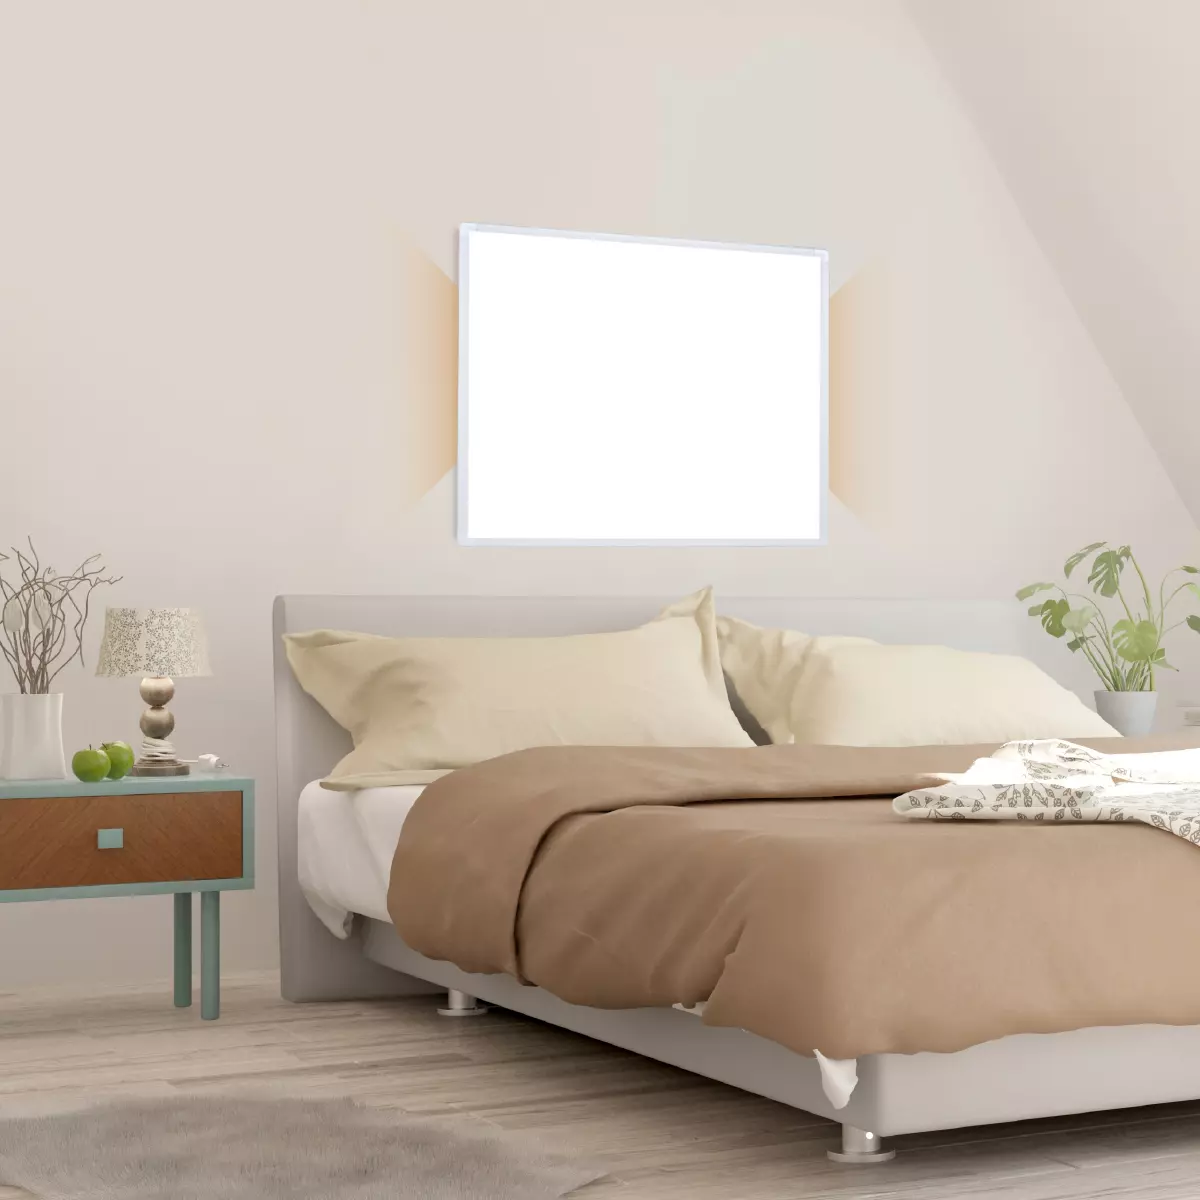 Weißer Infrarotheizkörper versorgt Schlafzimmer mit angenehmer Wärme